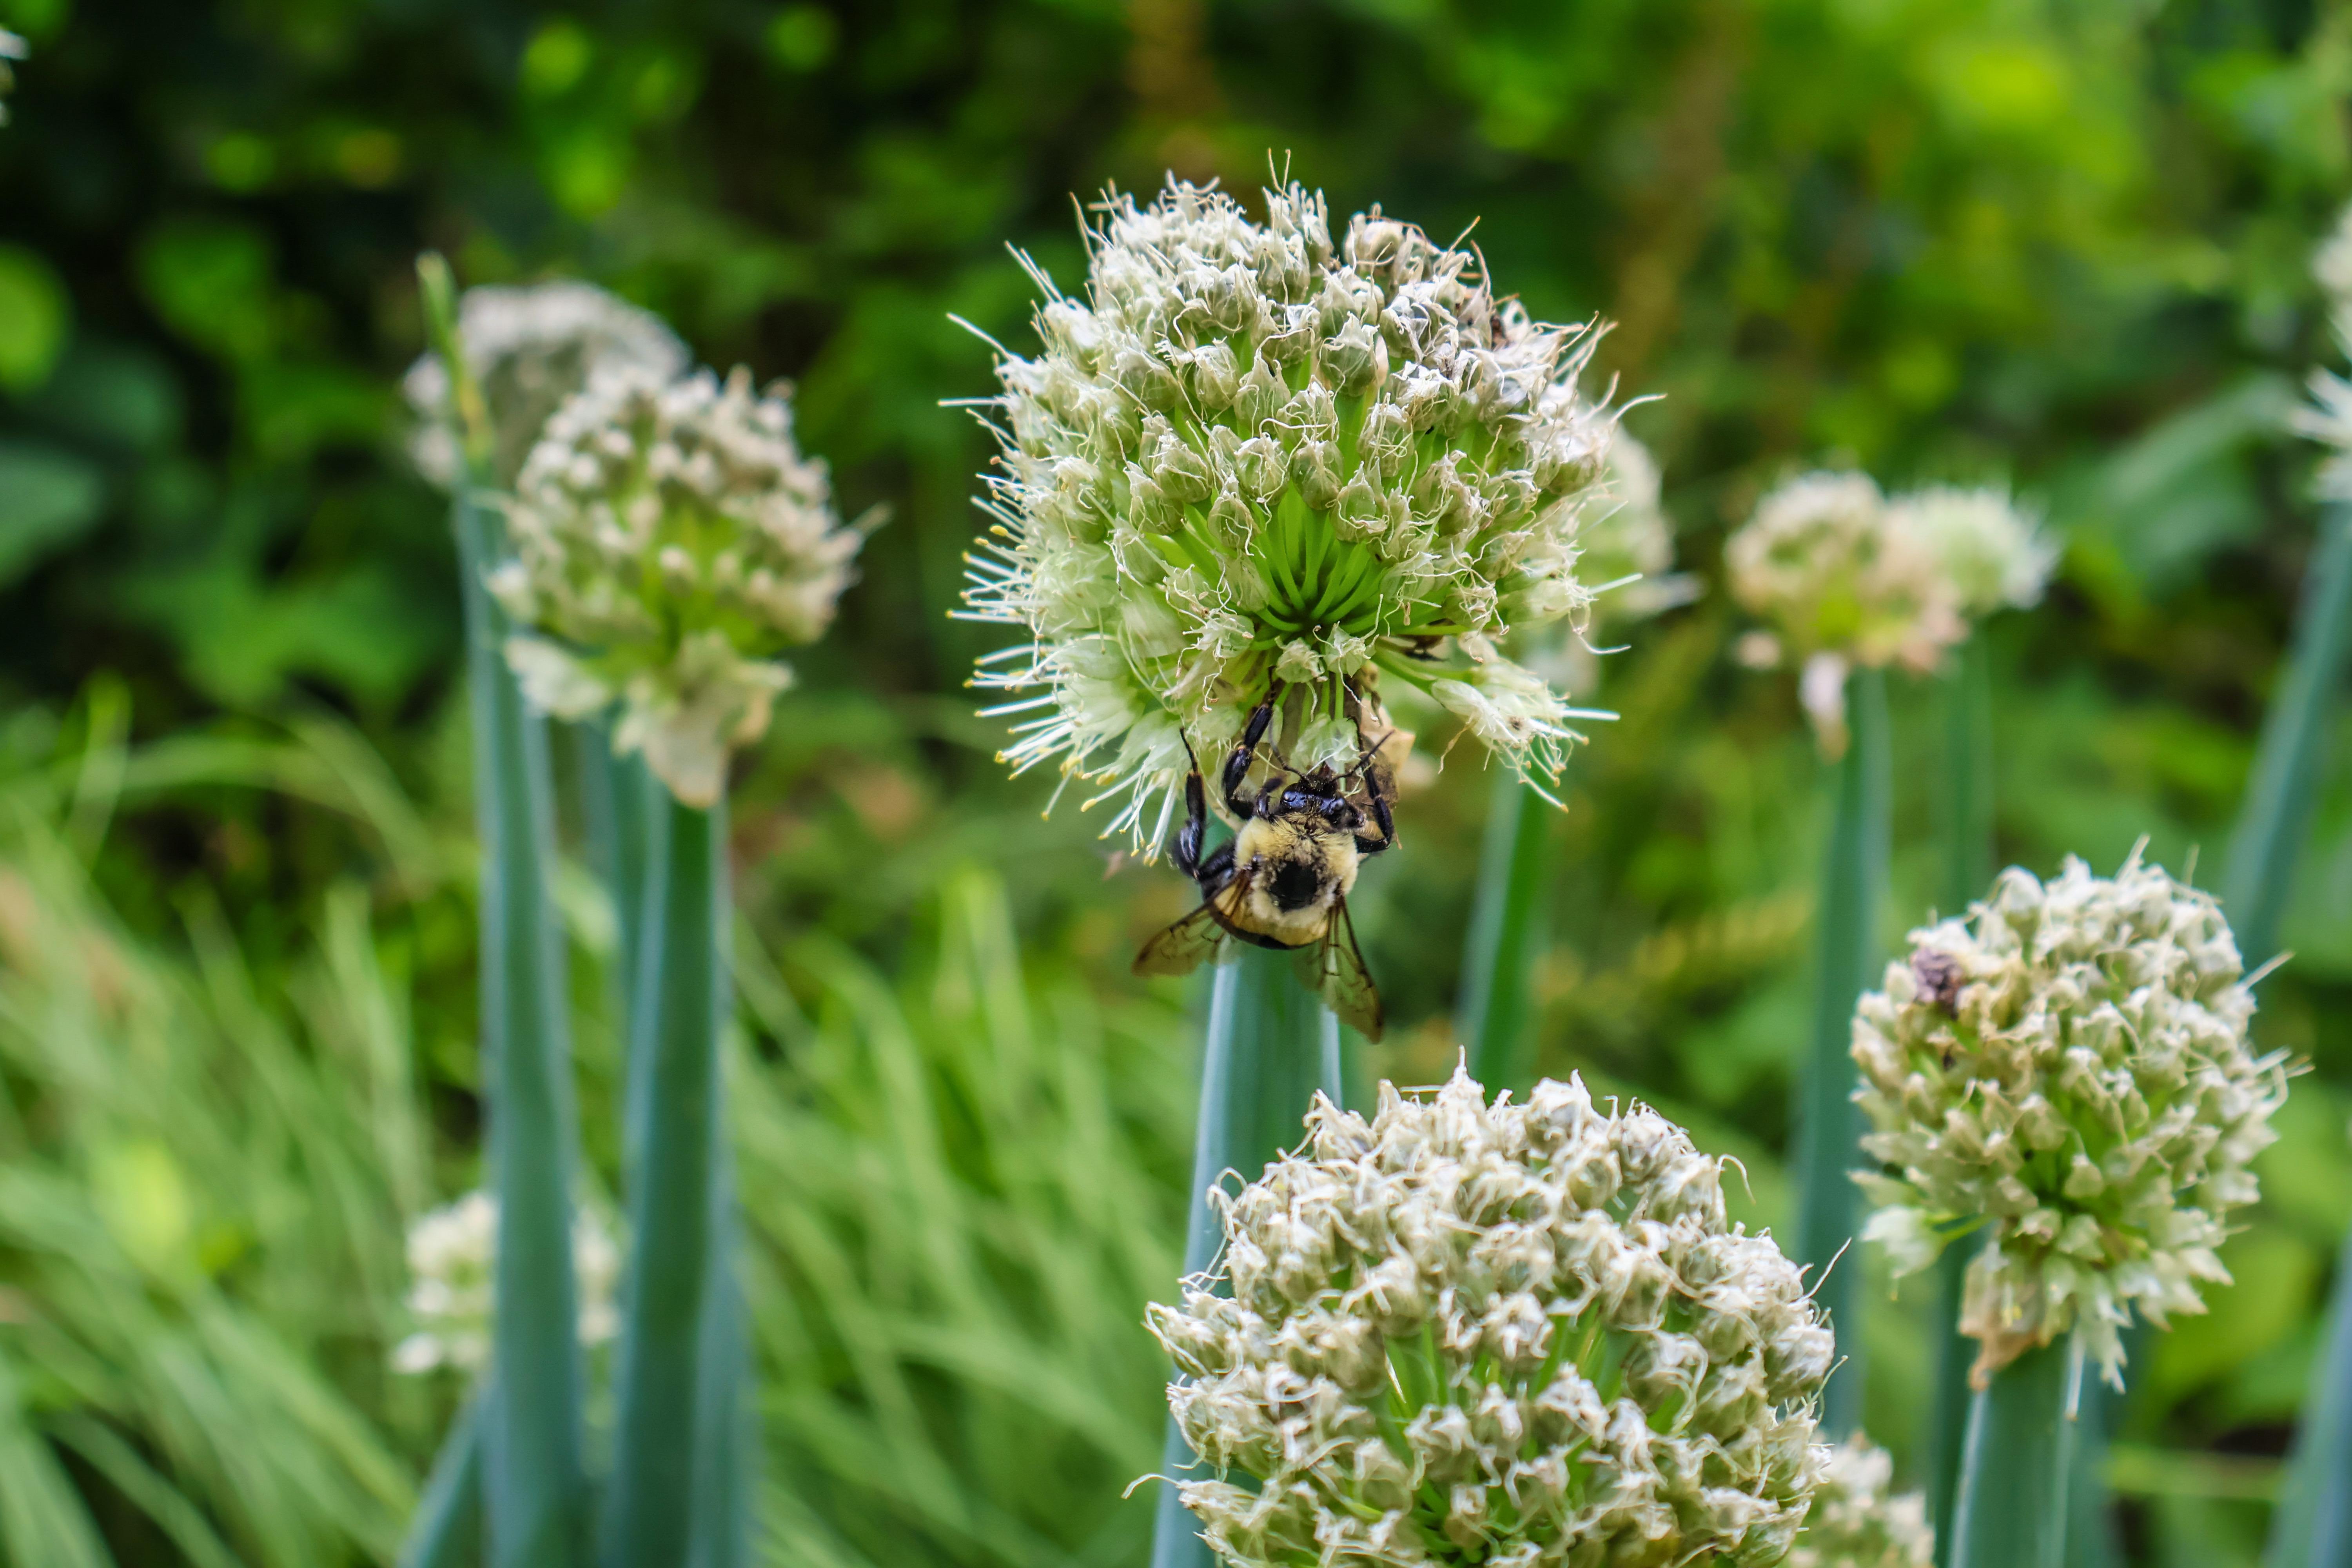 A bumble bee pollinates an Alati onion